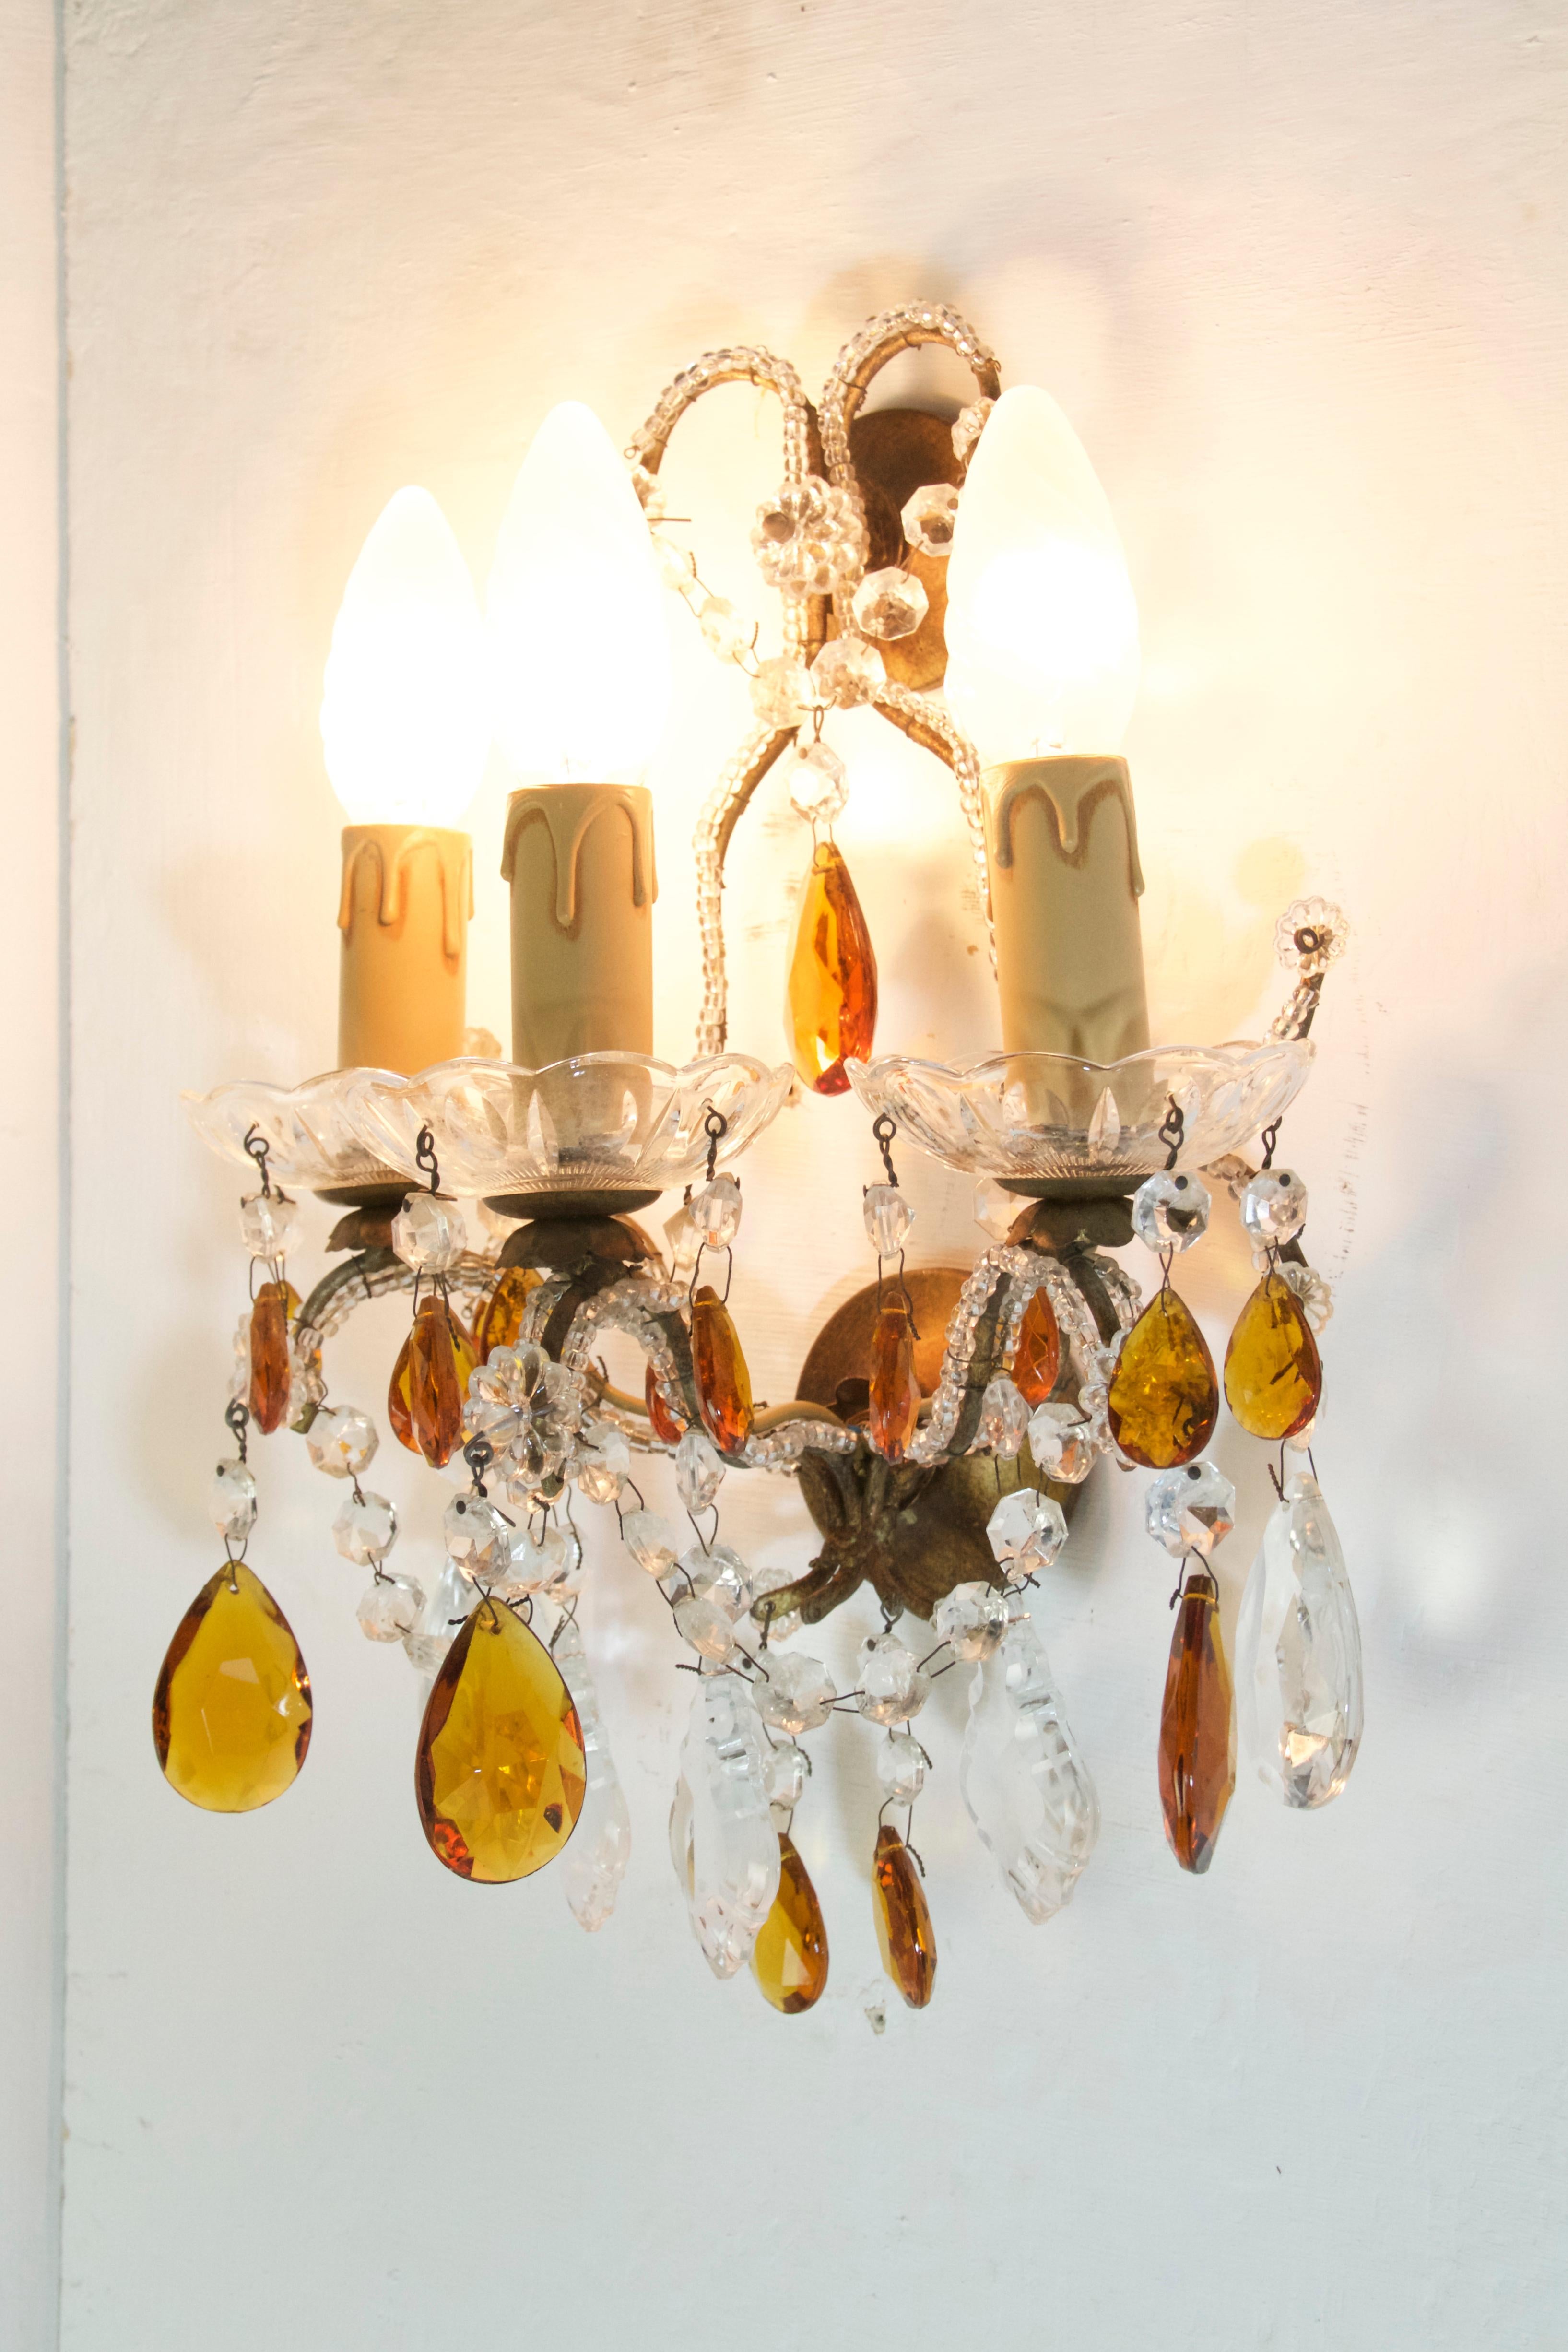 Deux ensembles avec deux paires dans chaque ensemble d'appliques murales à la manière de la Maison Baguès. Chaque applique comporte trois porte-ampoules de style bougie et est décorée de cristaux et de verre de couleur claire et ambrée. Les